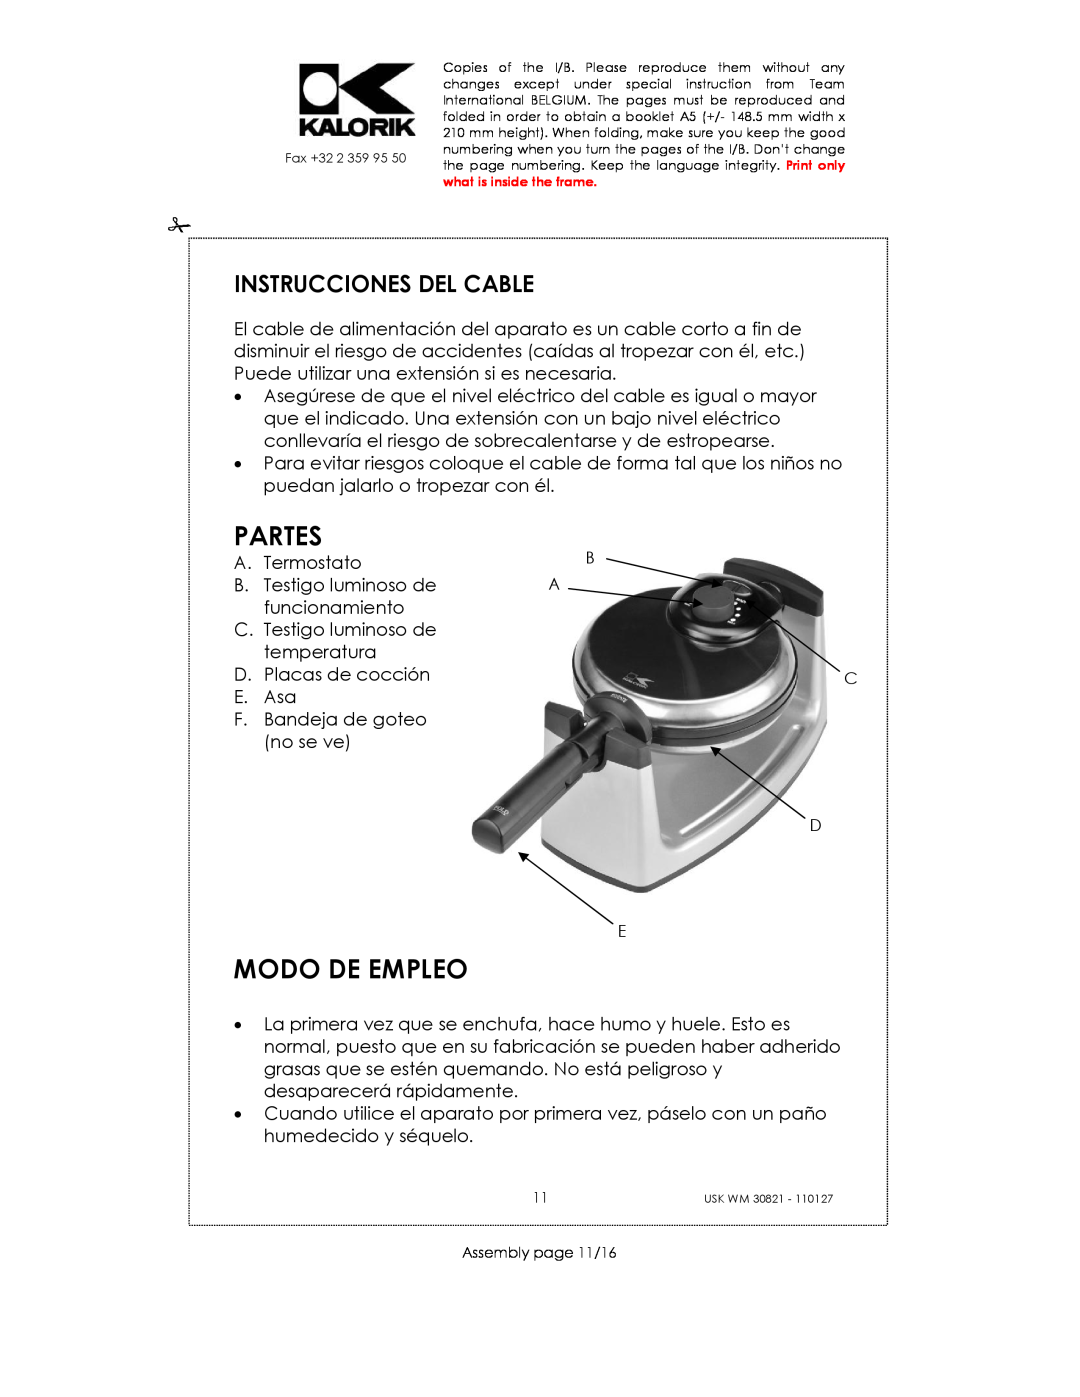 Kalorik USK WM 30821 manual Partes, Modo De Empleo, Instrucciones Del Cable 